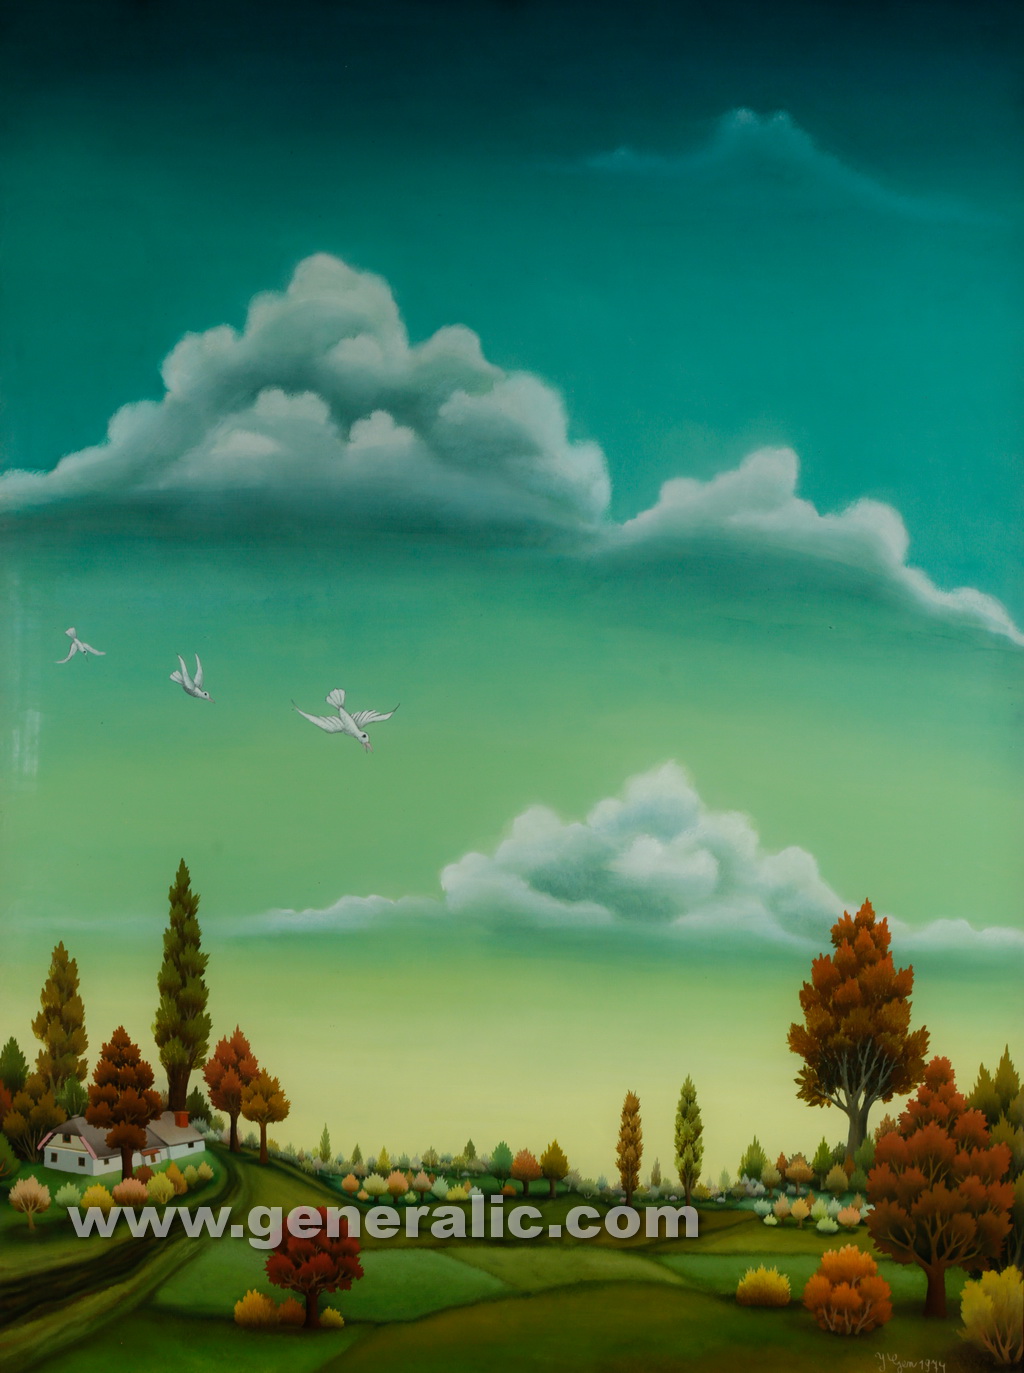 Ivan Generalic, 1974, Low landscape, oil on glass, 97x73 cm